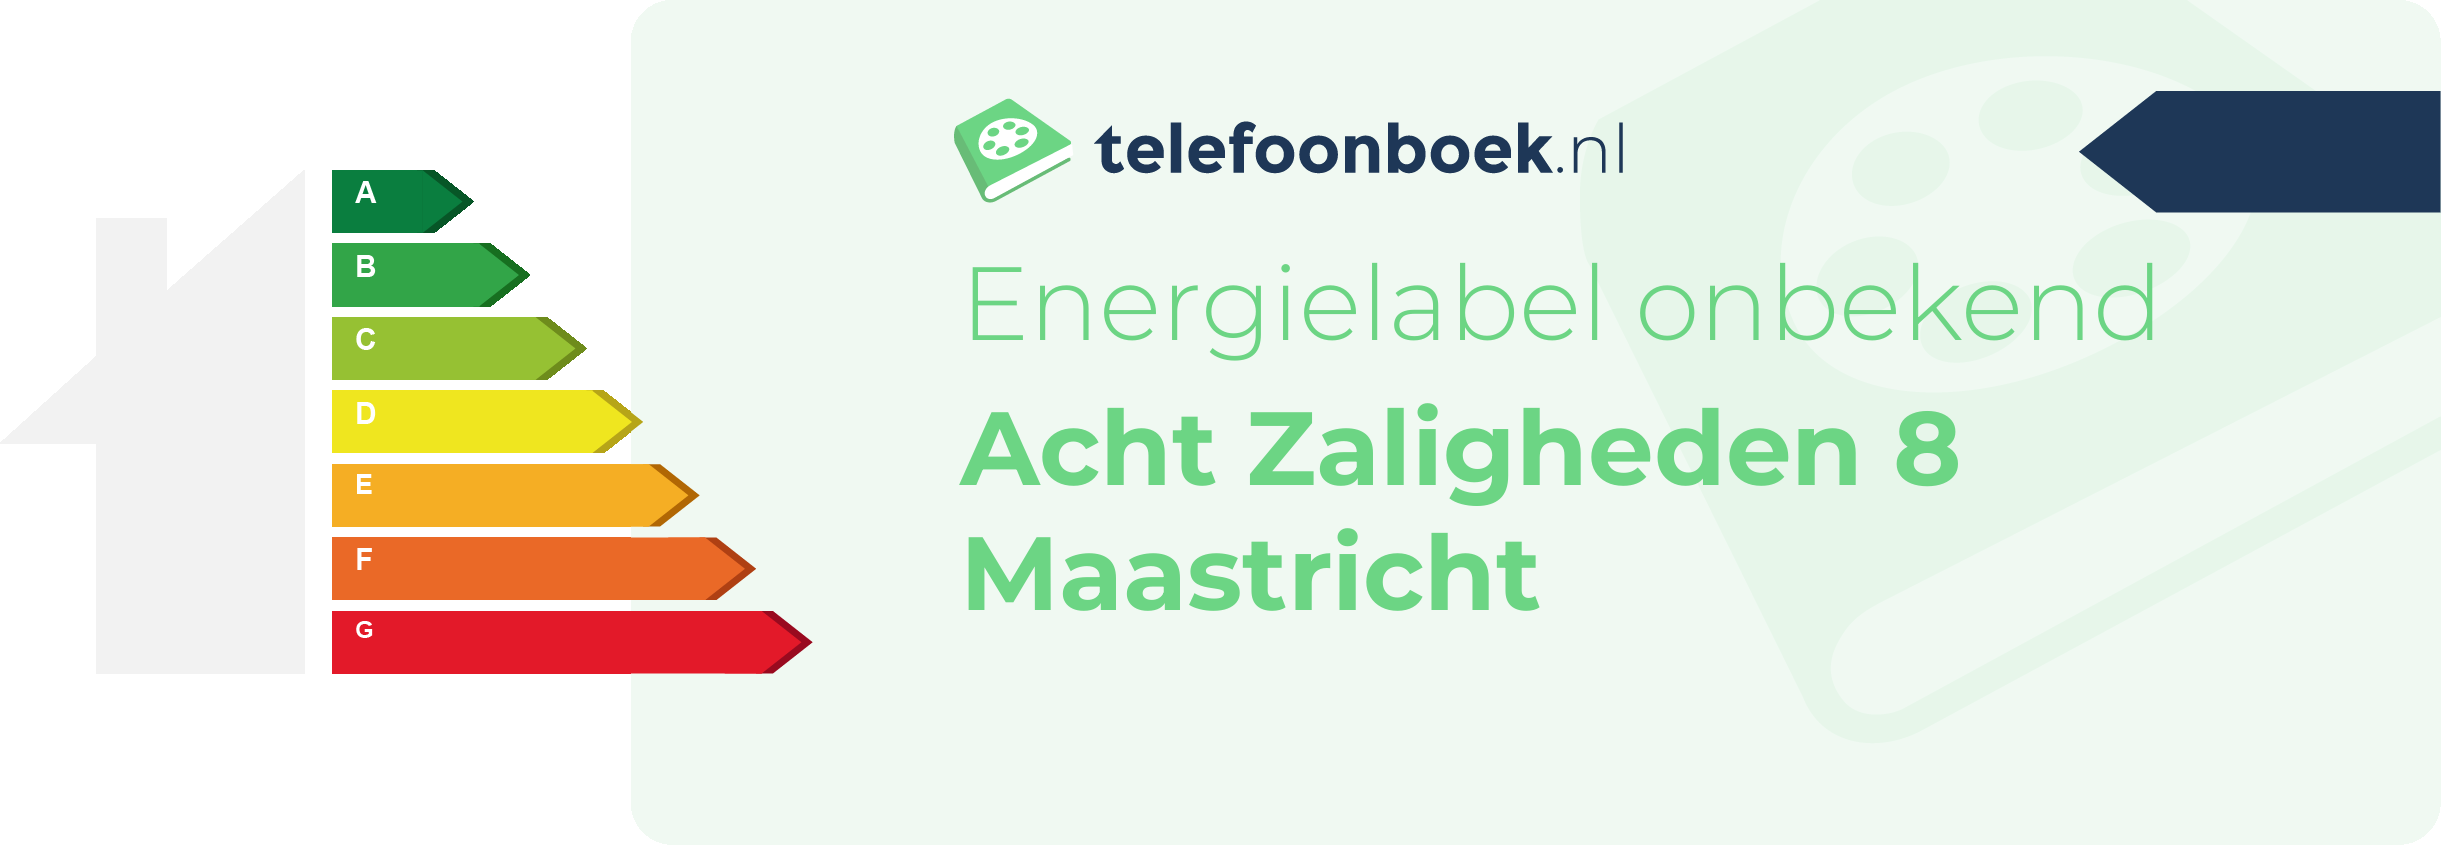 Energielabel Acht Zaligheden 8 Maastricht